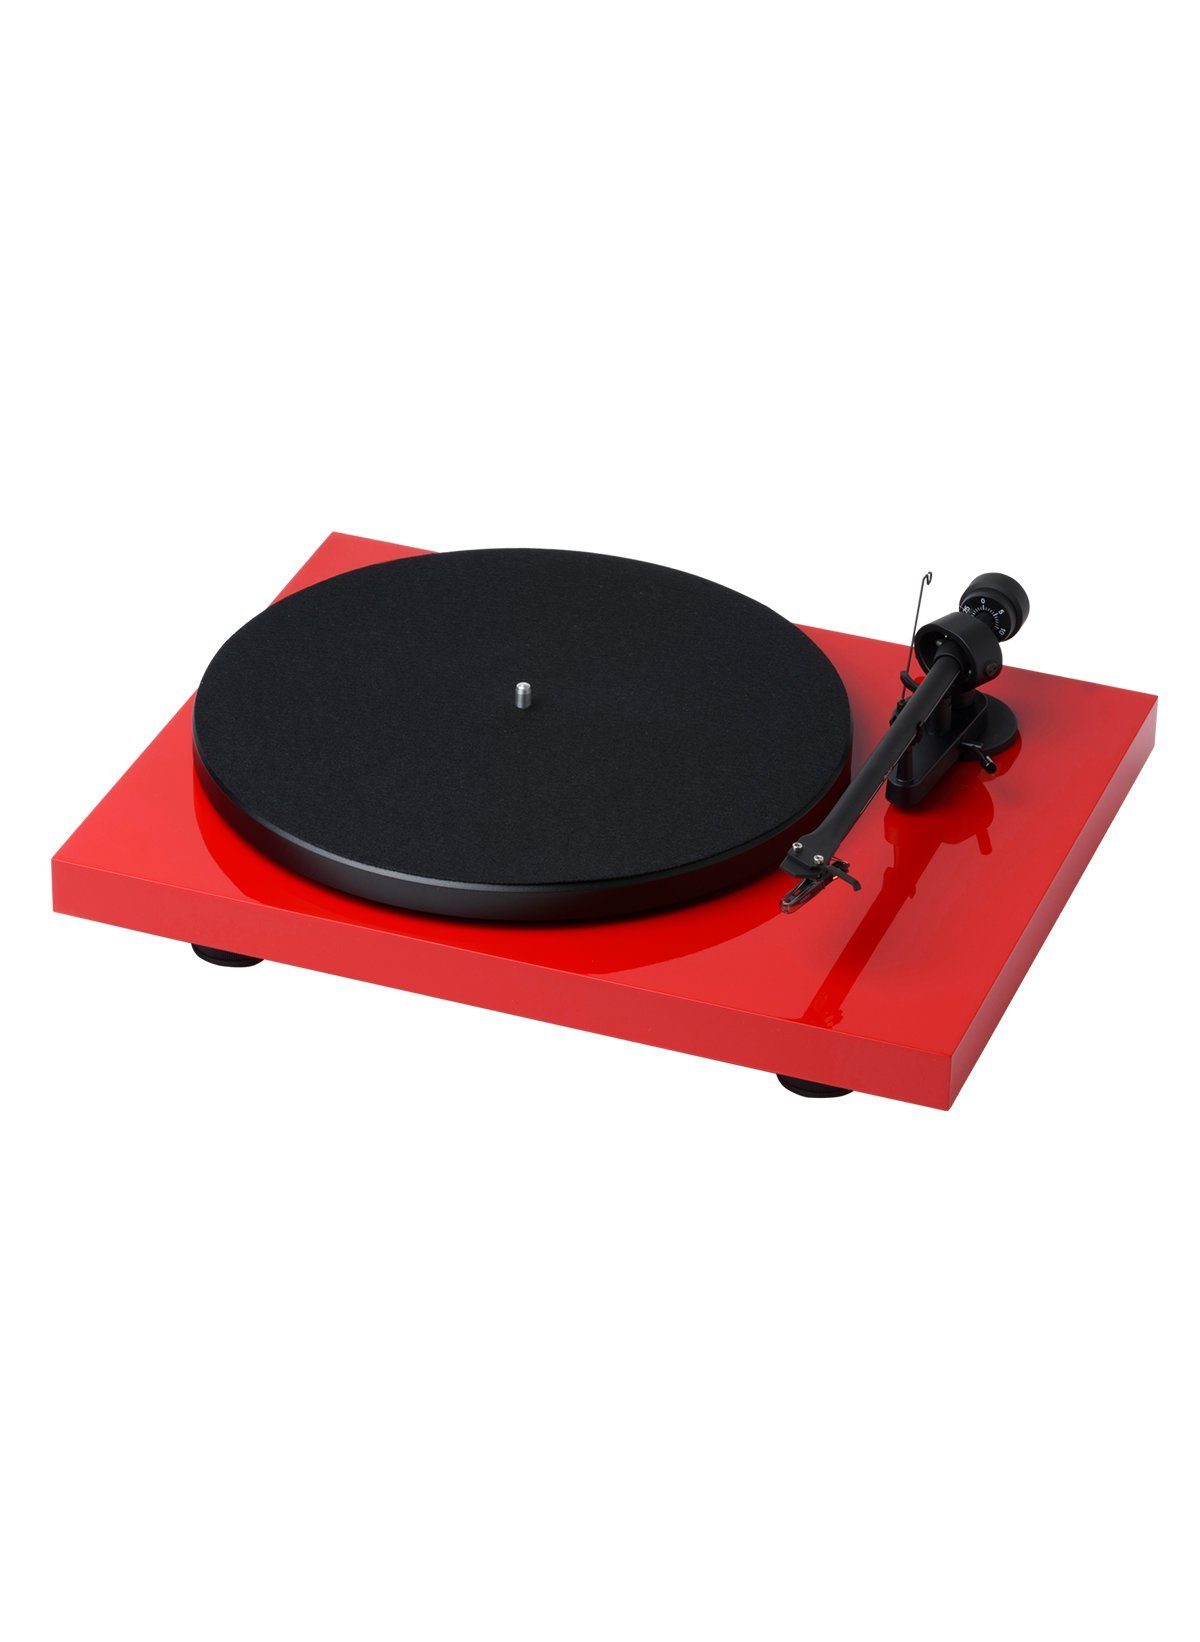 OM5e Plattenspieler Pro-Ject Red II RecordMaster Debut